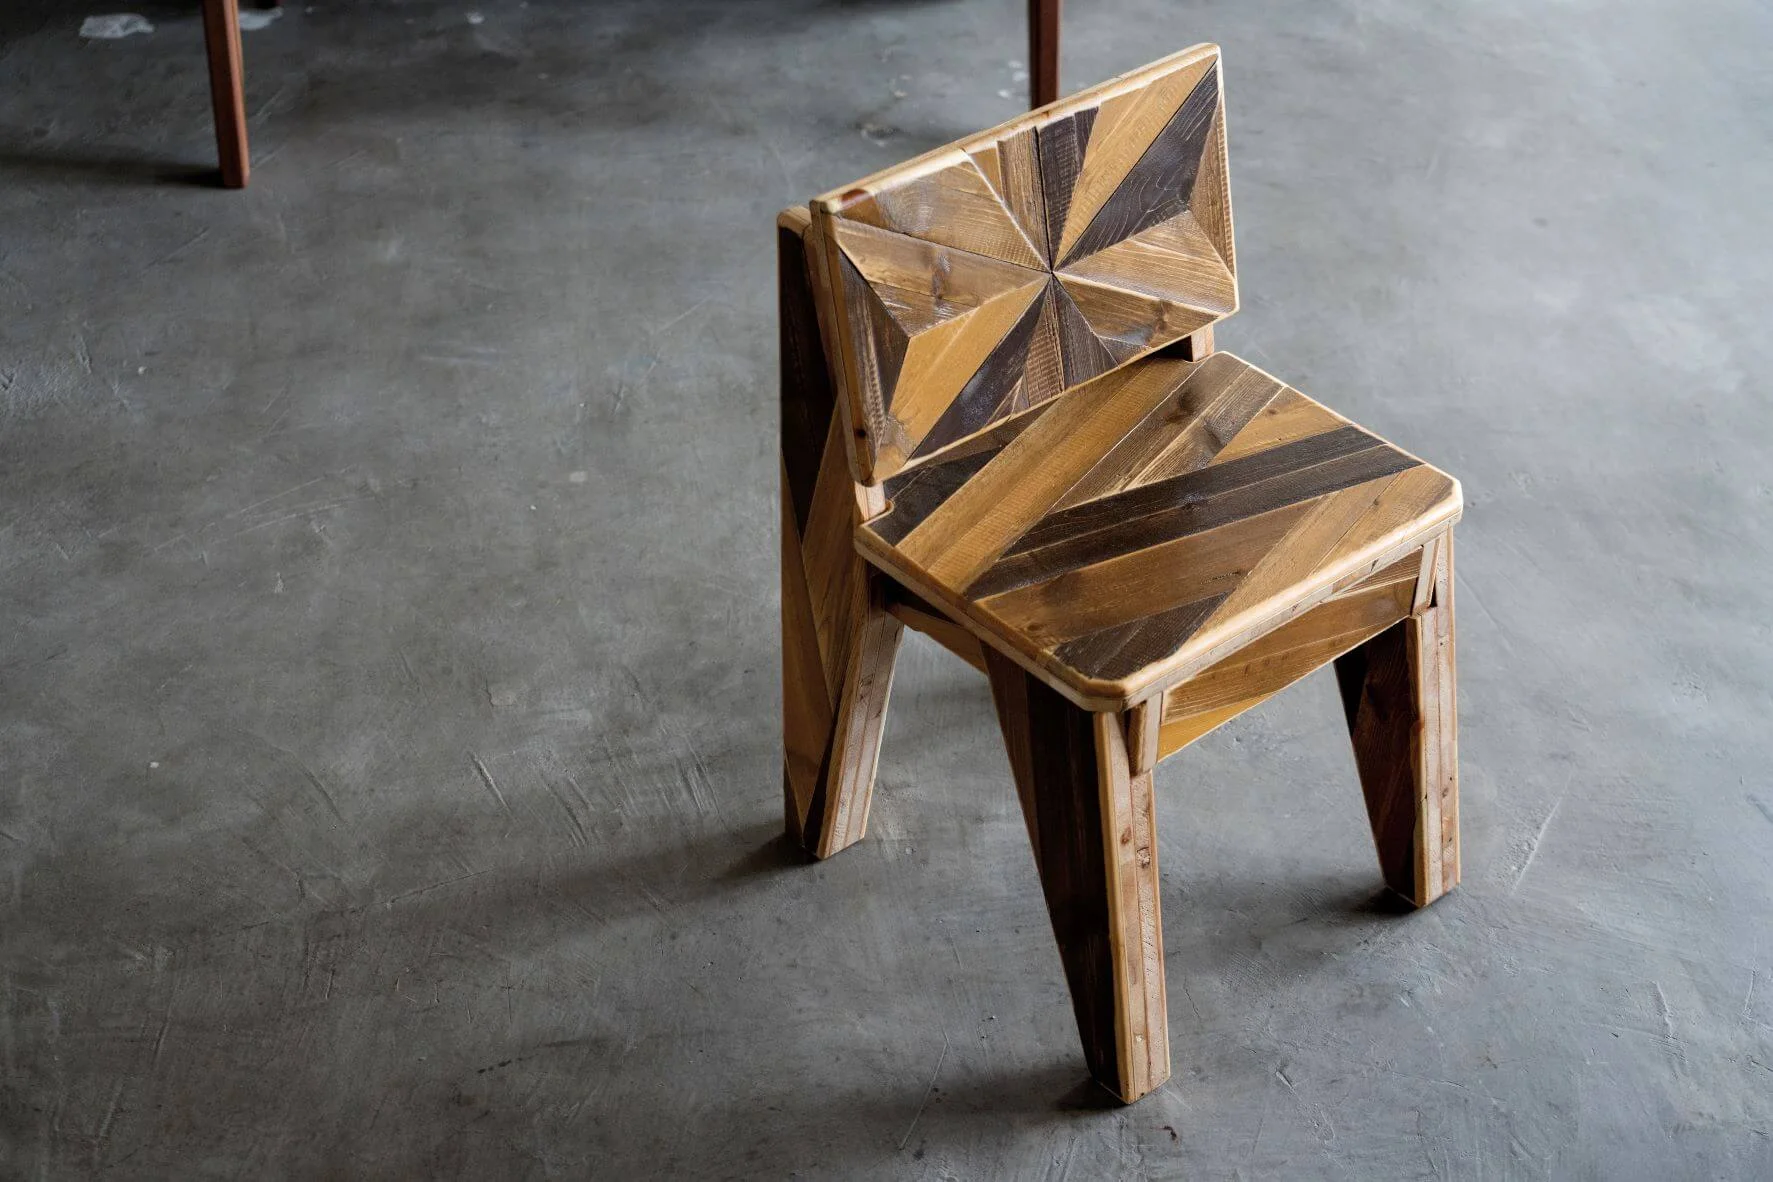 製作產品後，將剩下的木塊重新切割並拼接成椅子，又再一次為木材賦予新生命。